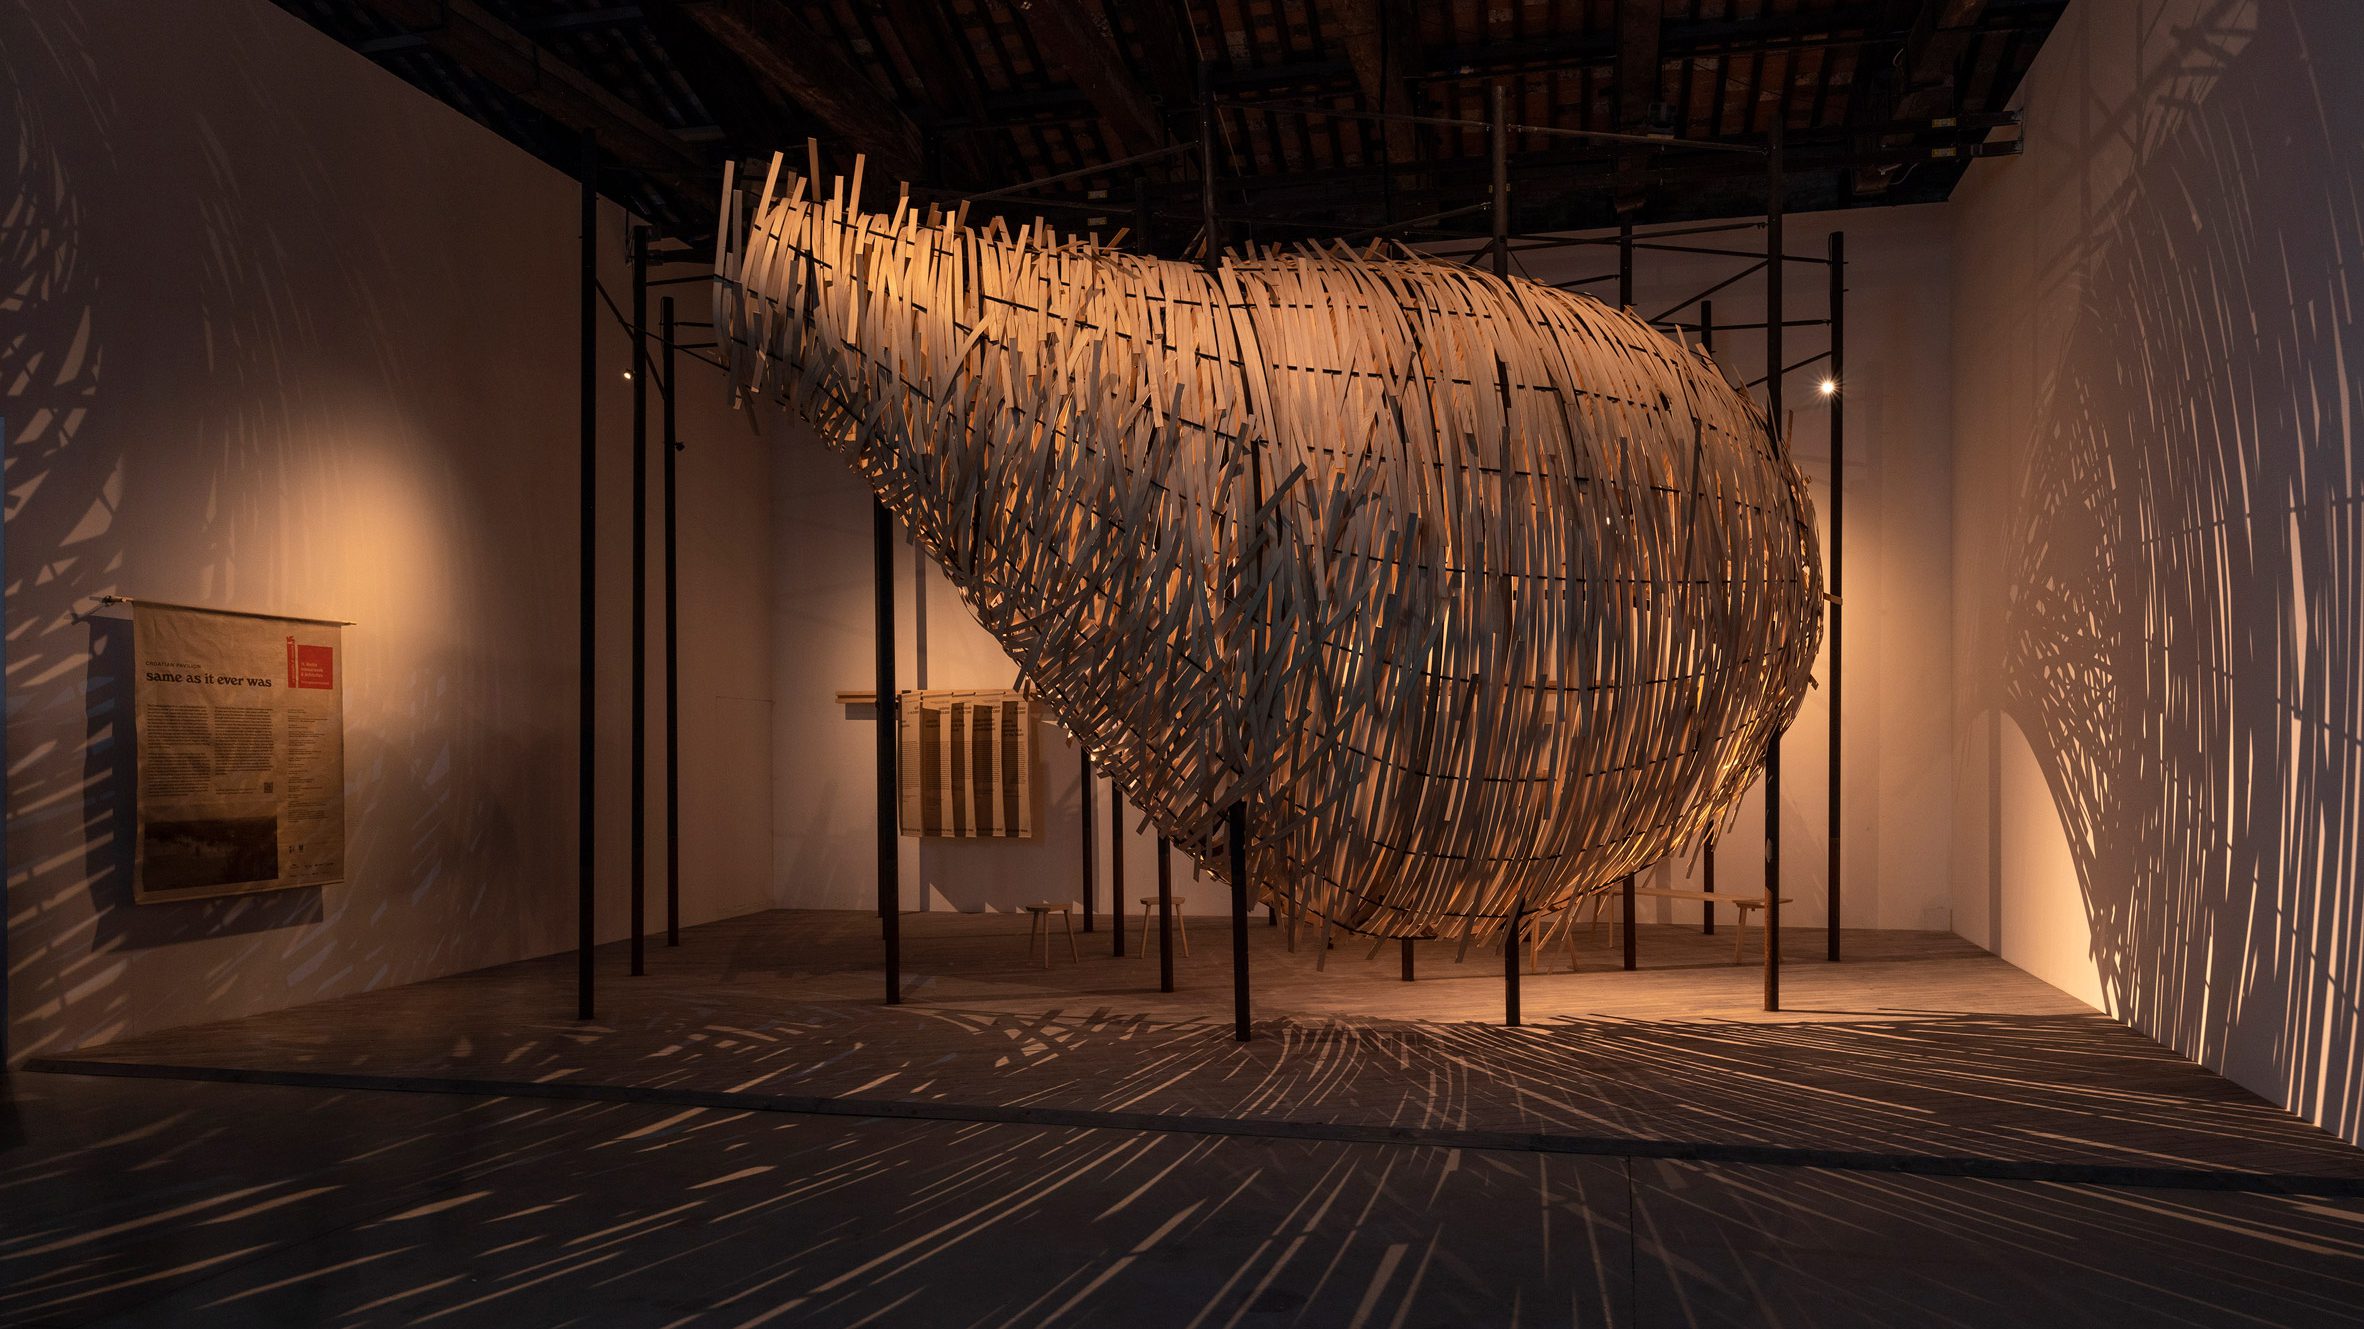 Venice Architecture Biennale trien lam kien truc